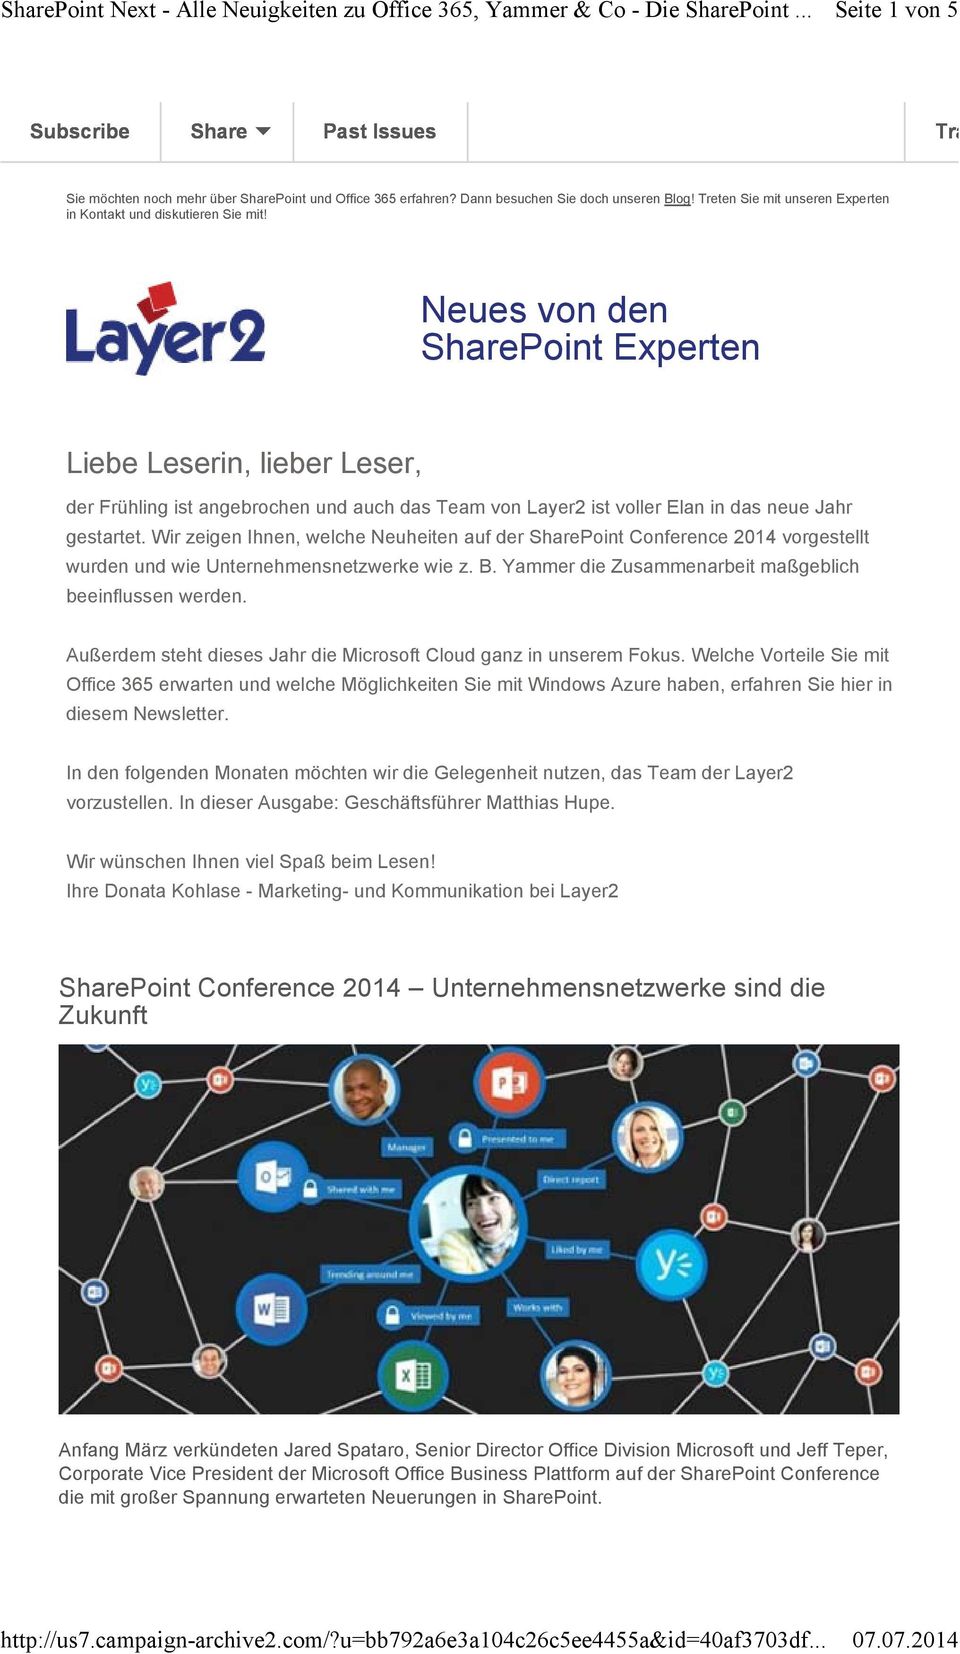 Neues von den SharePoint Experten Liebe Leserin, lieber Leser, der Frühling ist angebrochen und auch das Team von Layer2 ist voller Elan in das neue Jahr gestartet.